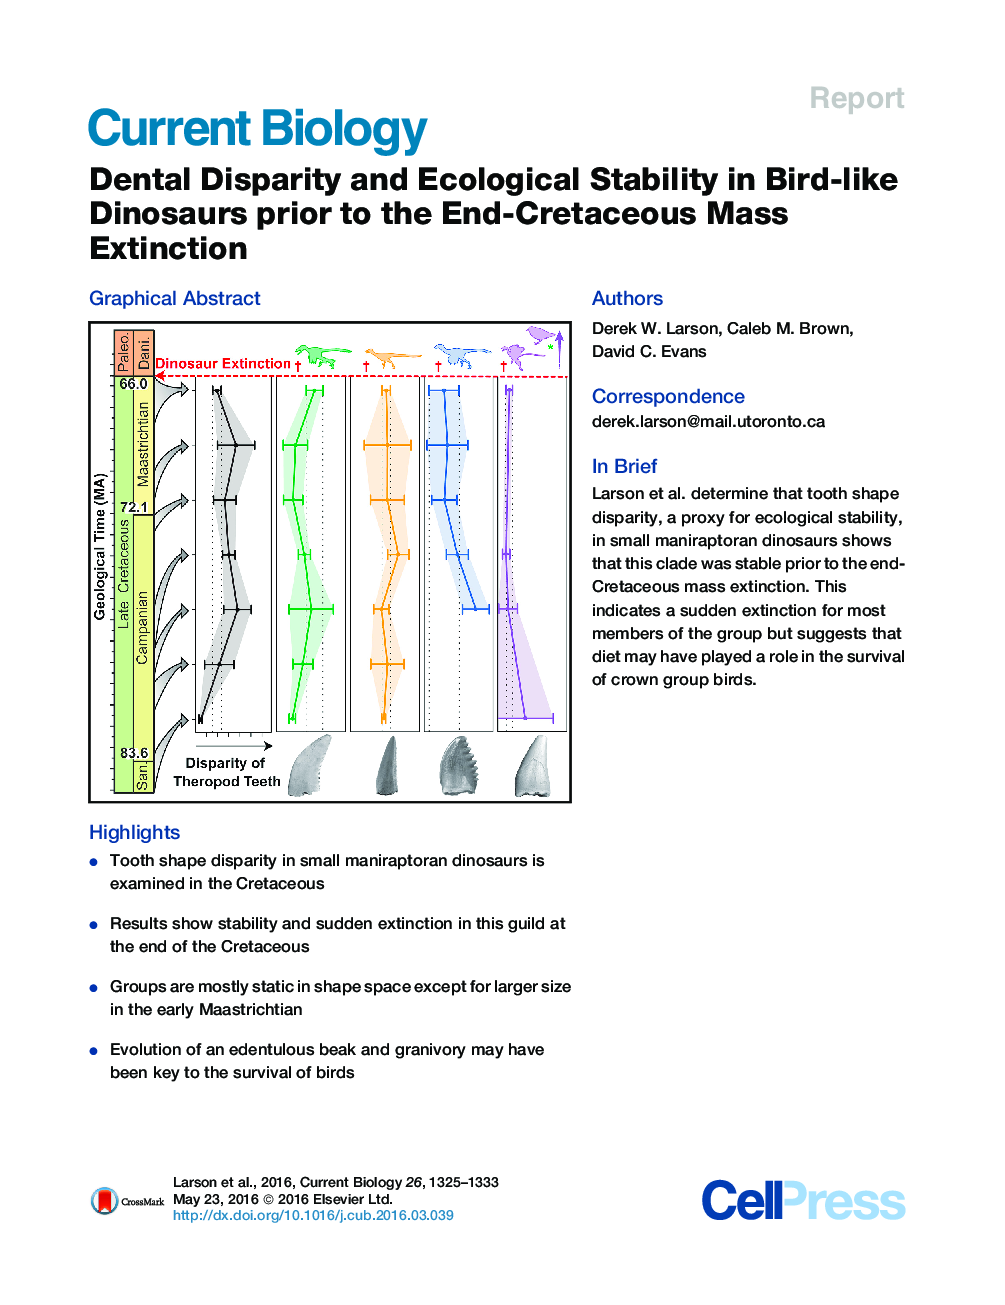 ناسازگاری دندانی و پایداری محیط زیست در دایناسورهای پرنده قبل از انقراض توده انقباضی کرتاسه 